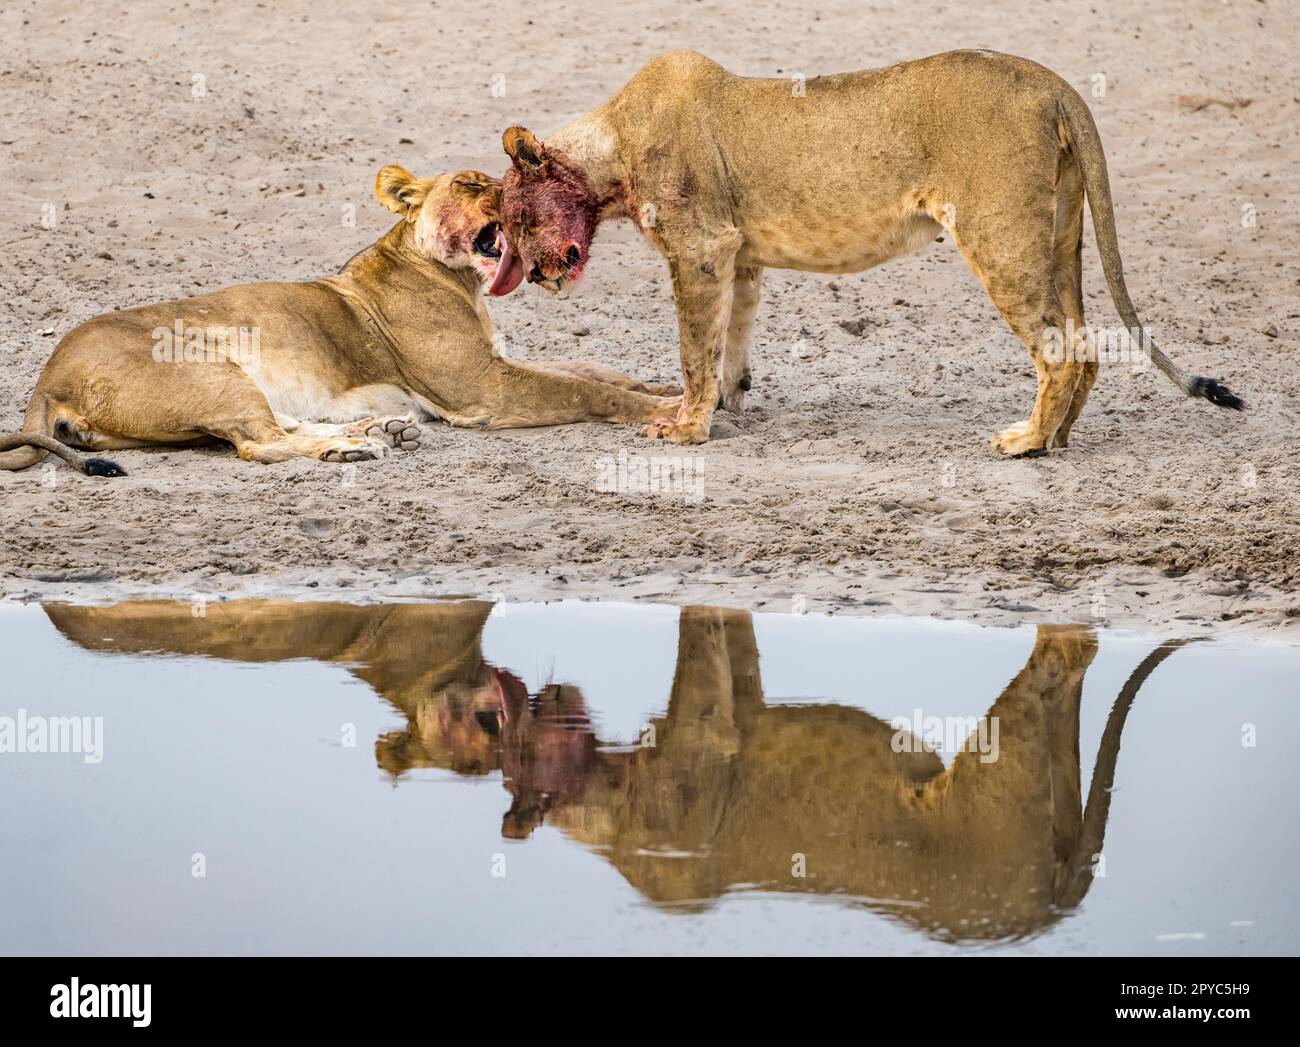 Un lion féminin léchant le visage de sa progéniture juvénile mâle après une mort dans un trou d'eau, désert de Kalahari, Botswana, Afrique Banque D'Images